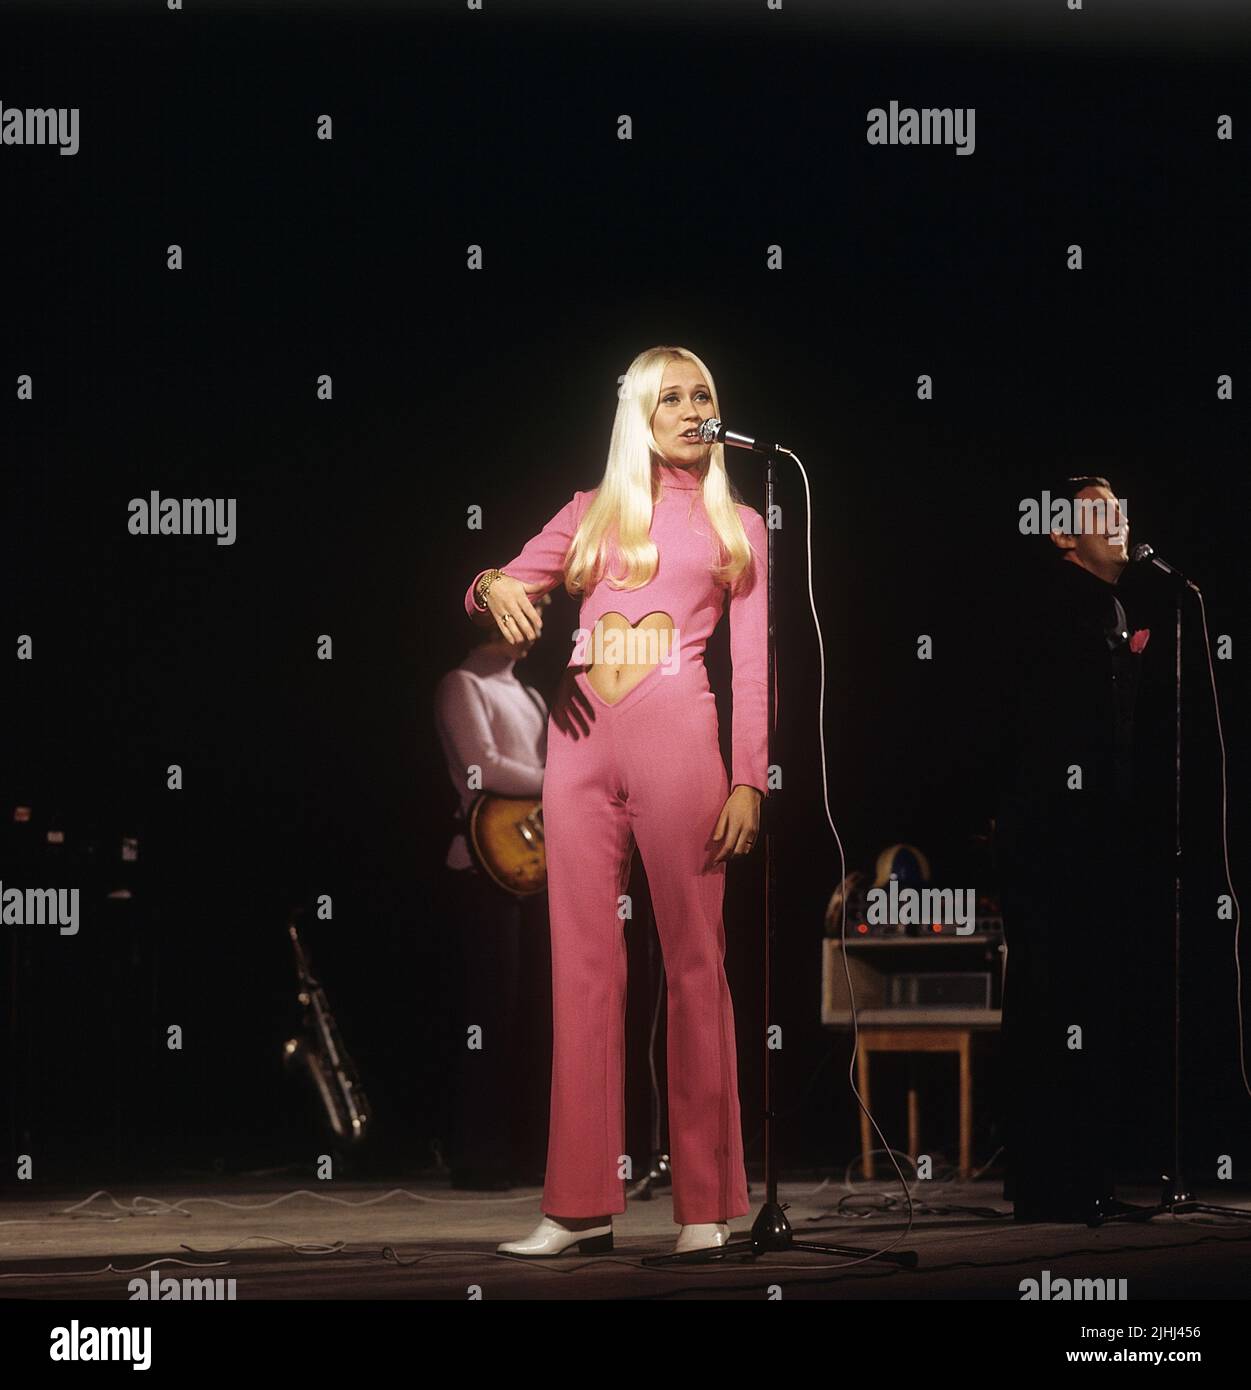 Agnetha Fältskog. Sänger. Mitglied der Popgruppe ABBA. Geboren 1950. Hier im Bild 1970. Stockfoto